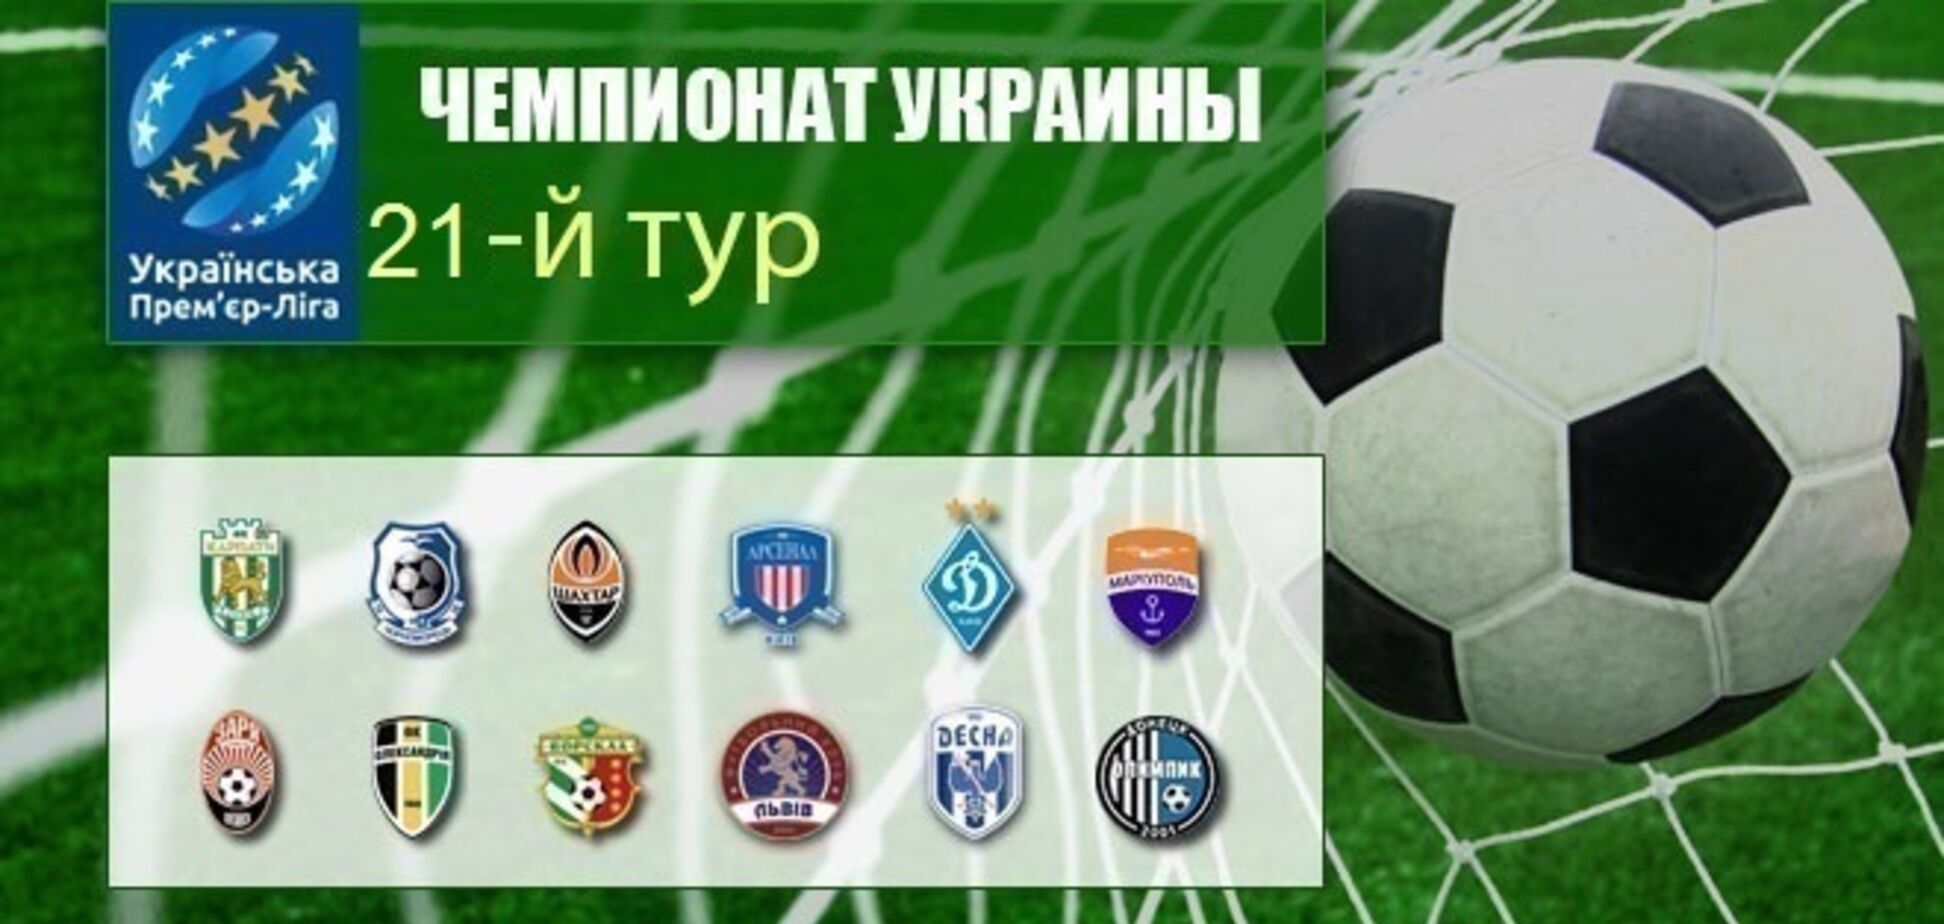 21-й тур чемпионата Украины по футболу: результаты, отчеты, обзоры